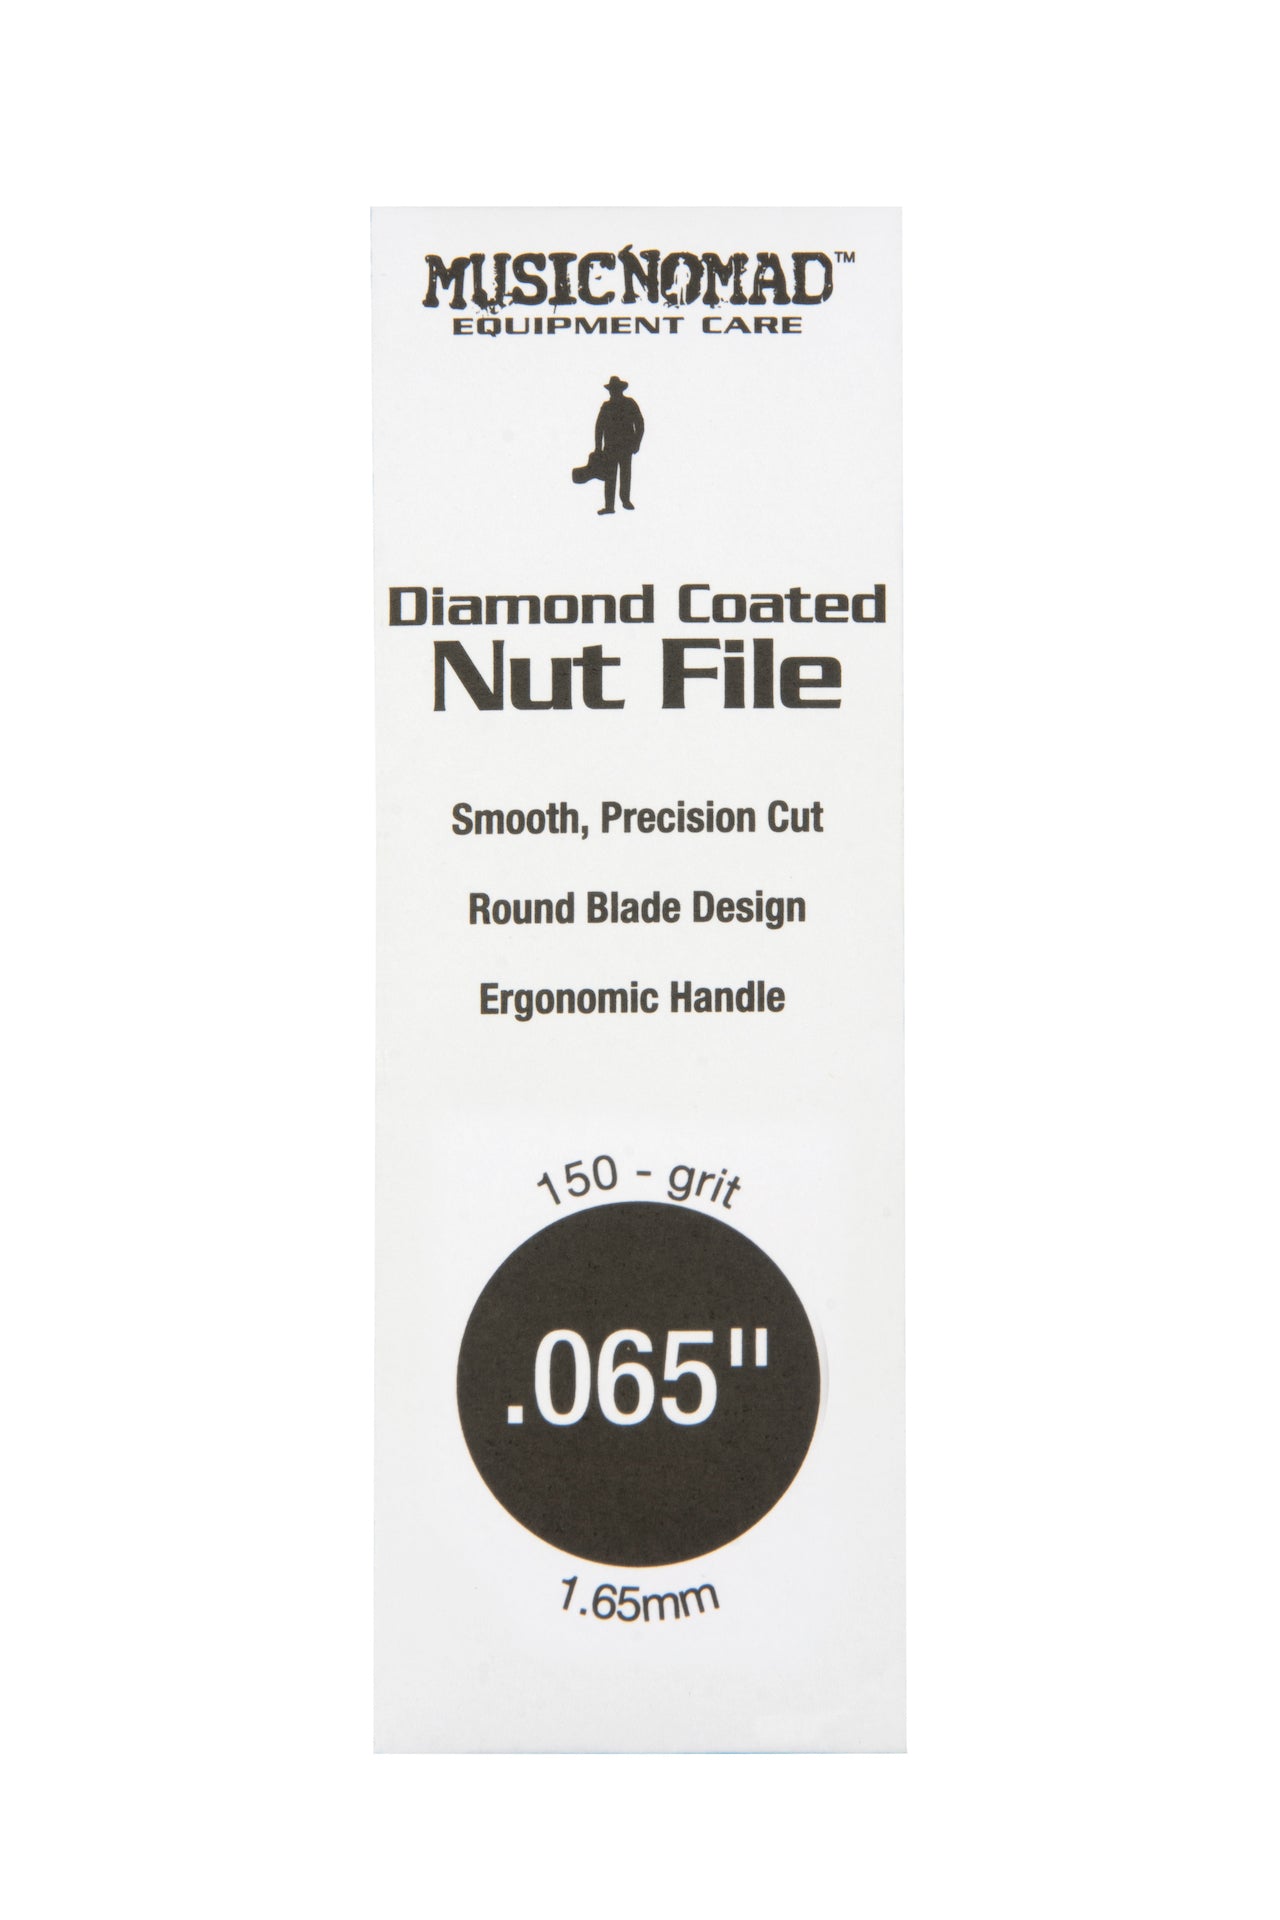 Music Nomad Diamond Coated Nut File Singles - HIENDGUITAR .065" .065" musicnomad musicnomad